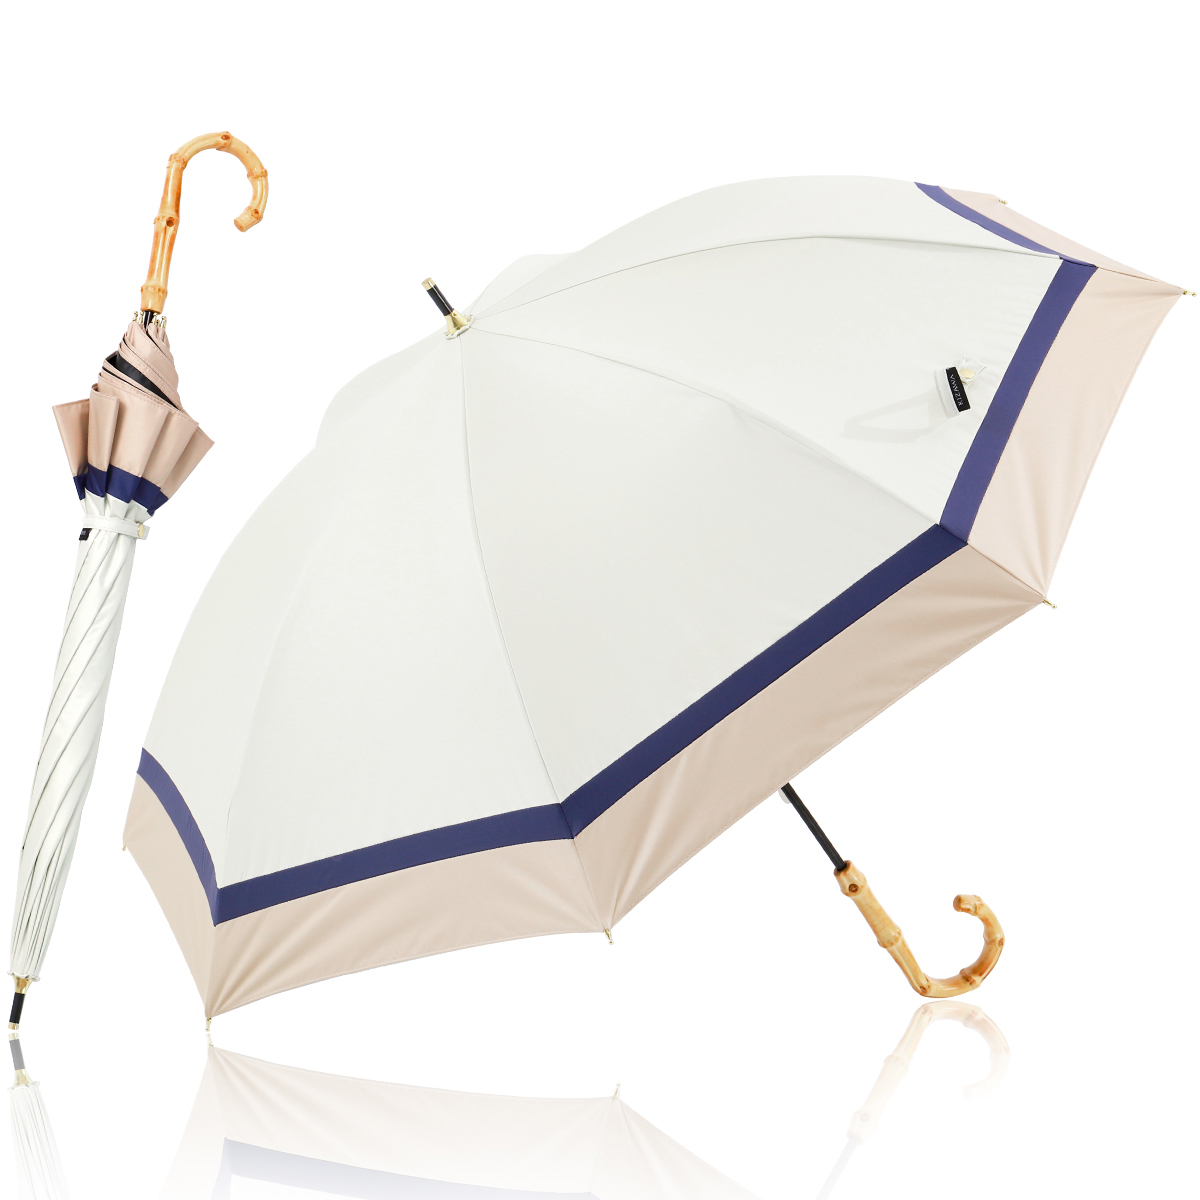 日傘 完全遮光 長傘 100%遮光 軽量 熱中症対策 晴雨兼用 大きい バンブー おしゃれ かわいい...